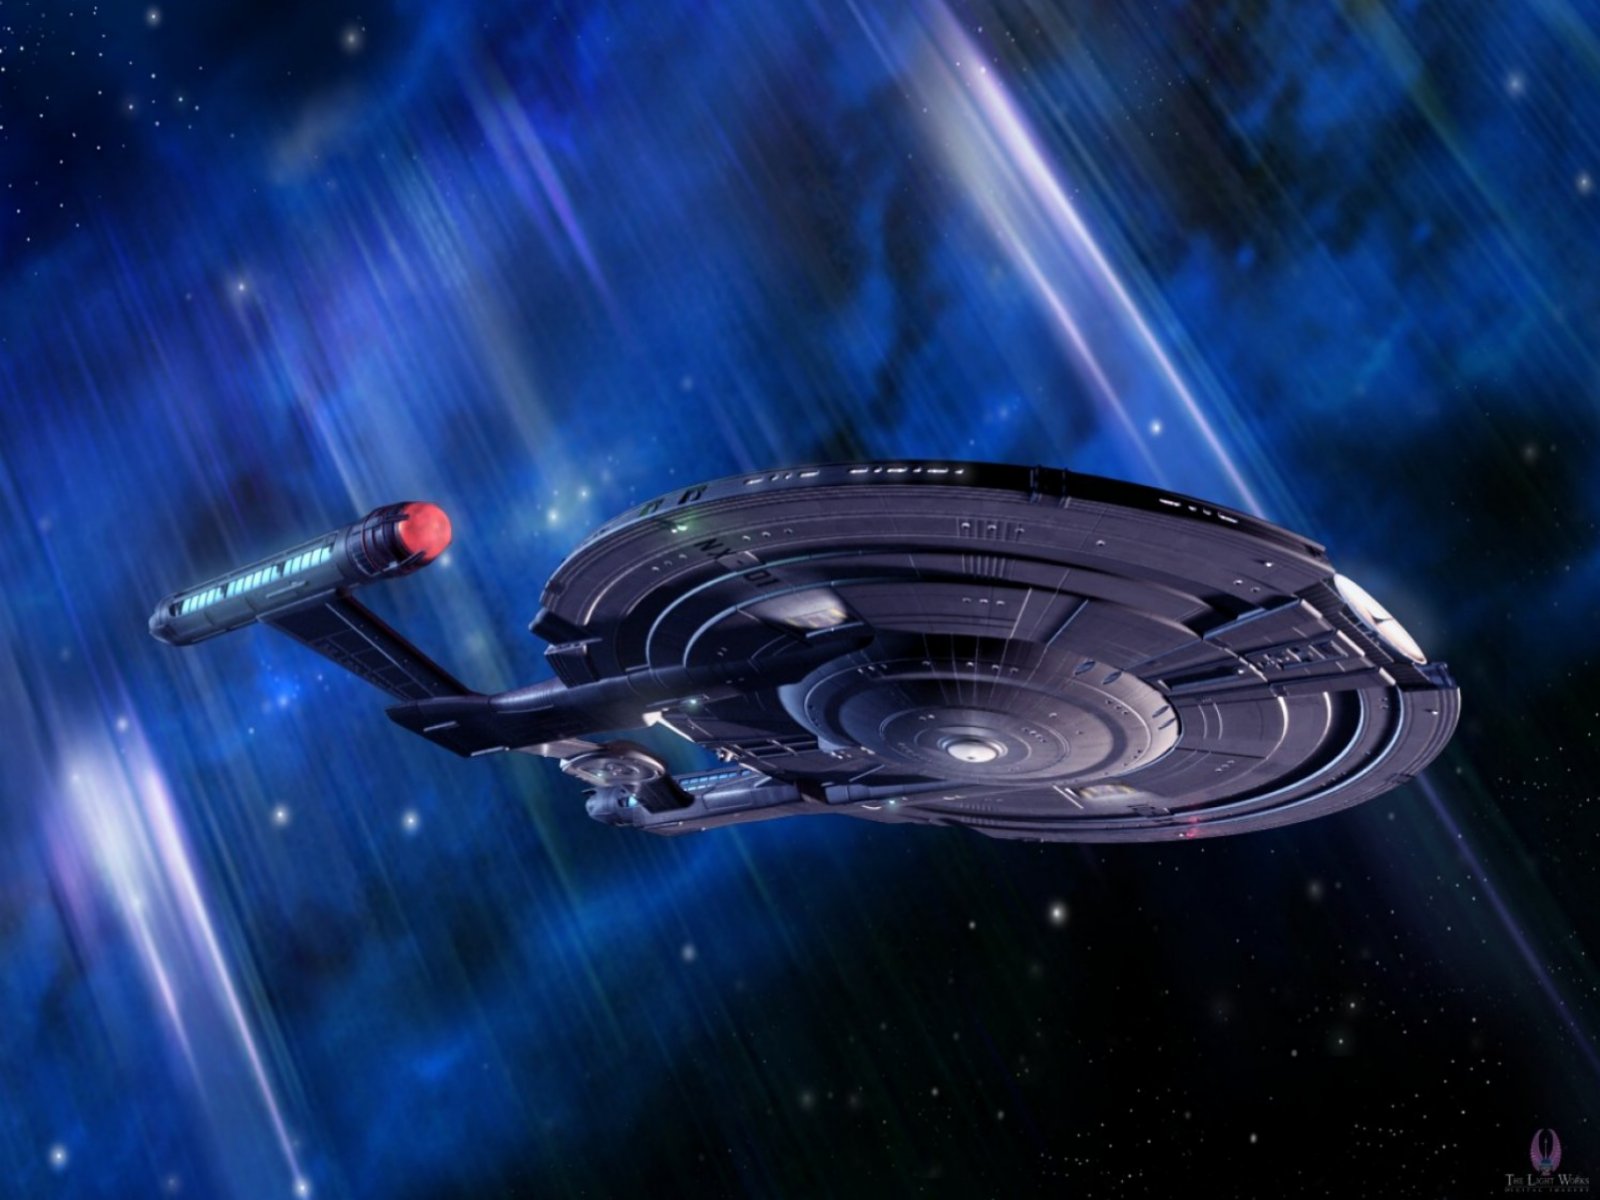 Star Trek Live Wallpaper - Nx Class Star Ship , HD Wallpaper & Backgrounds